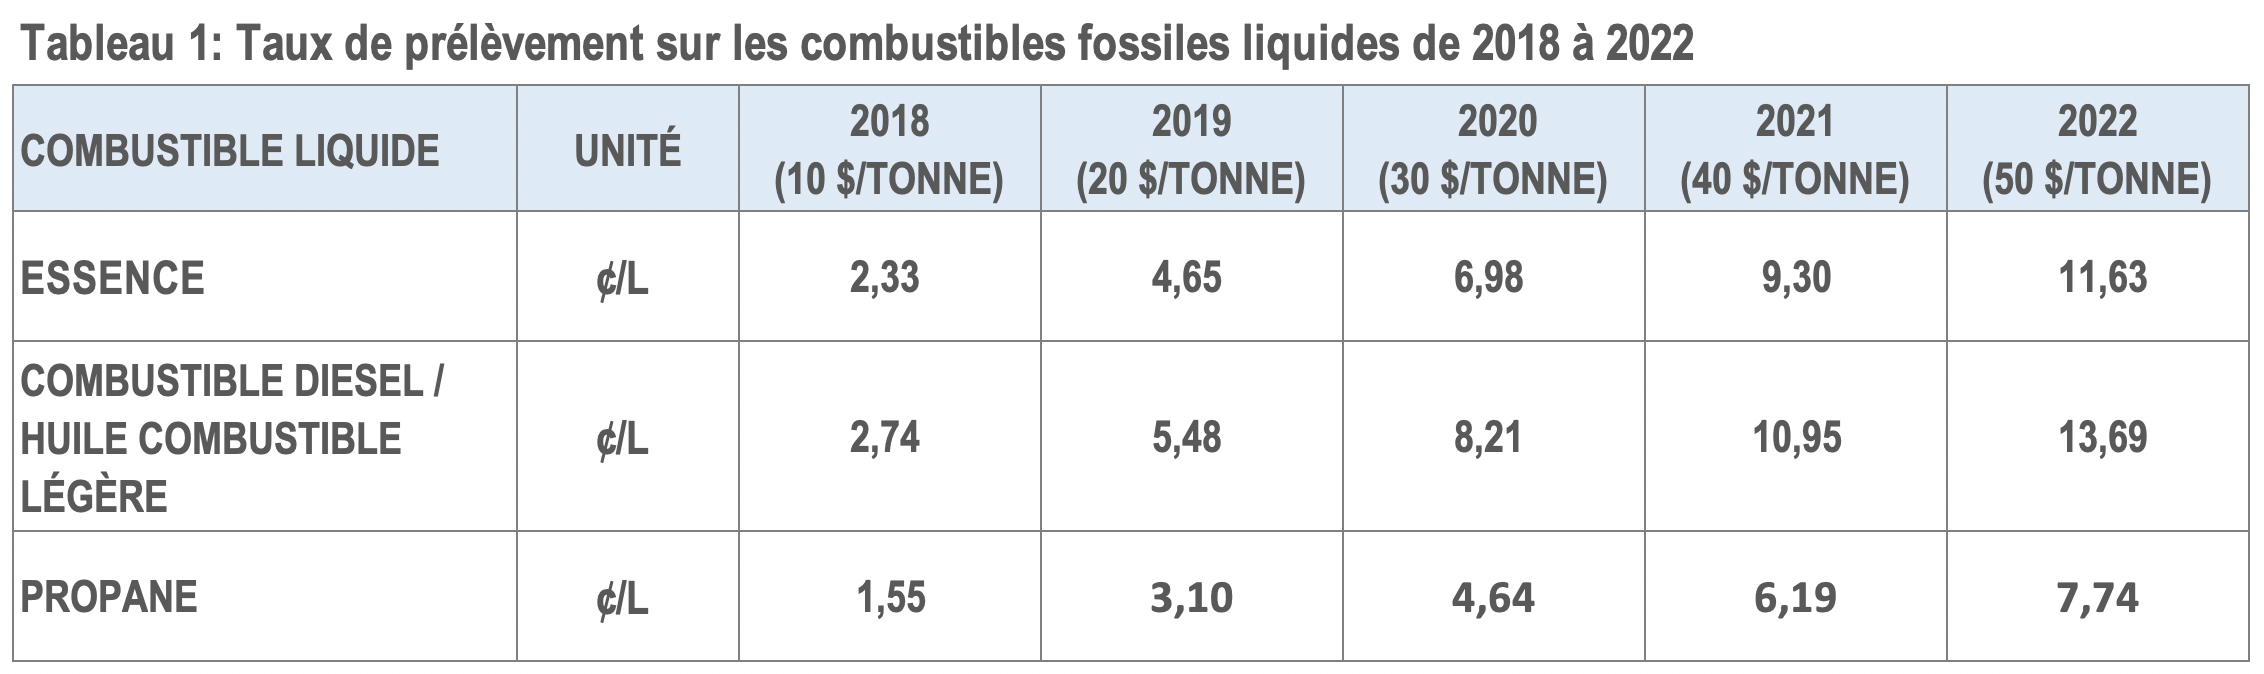 Un tableau montre les taux des redevances sur les combustibles fossiles liquides de 2018 à 2022.